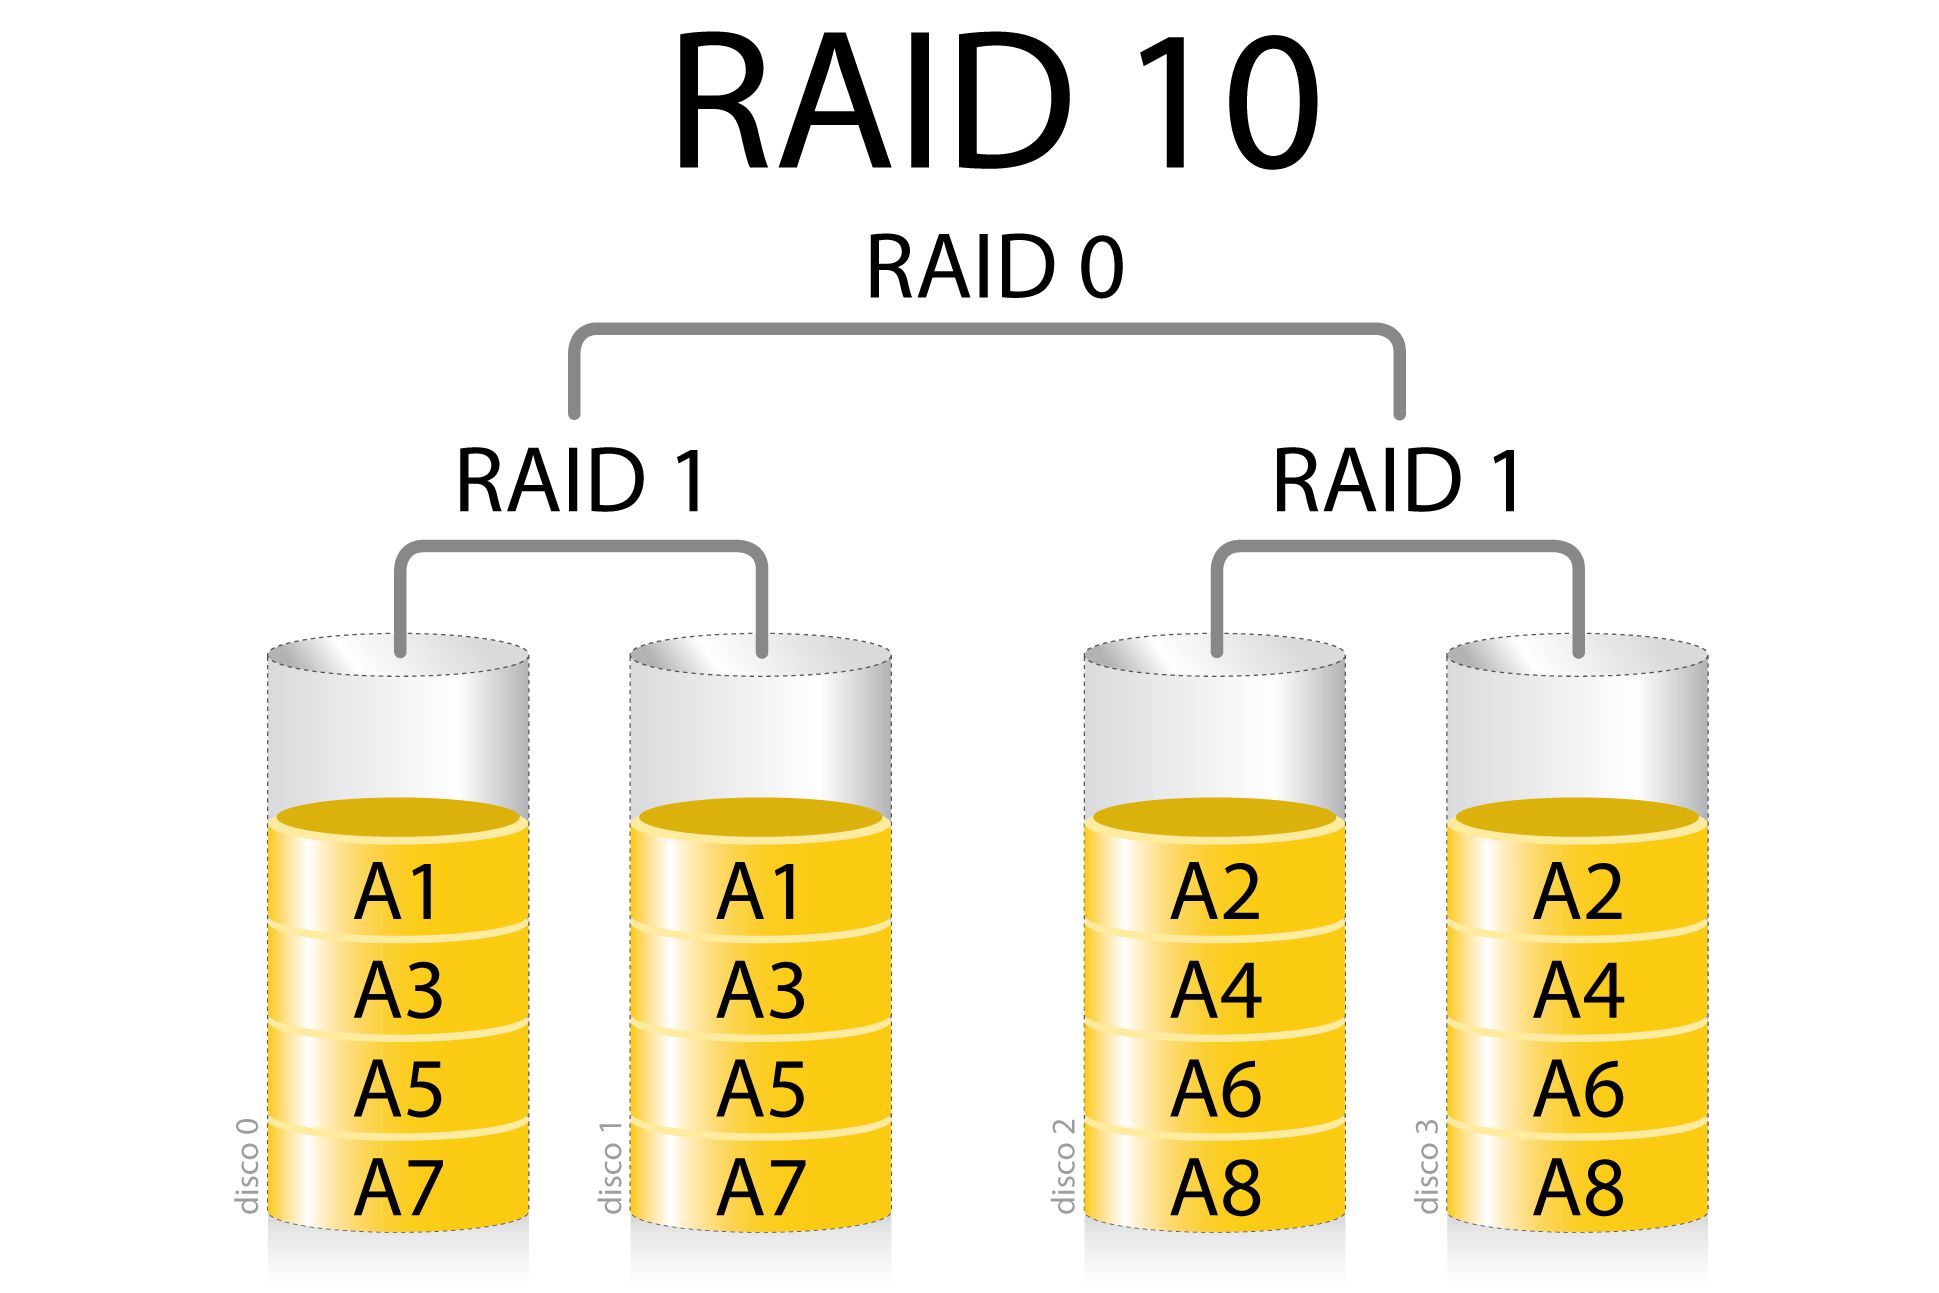 RAID 10